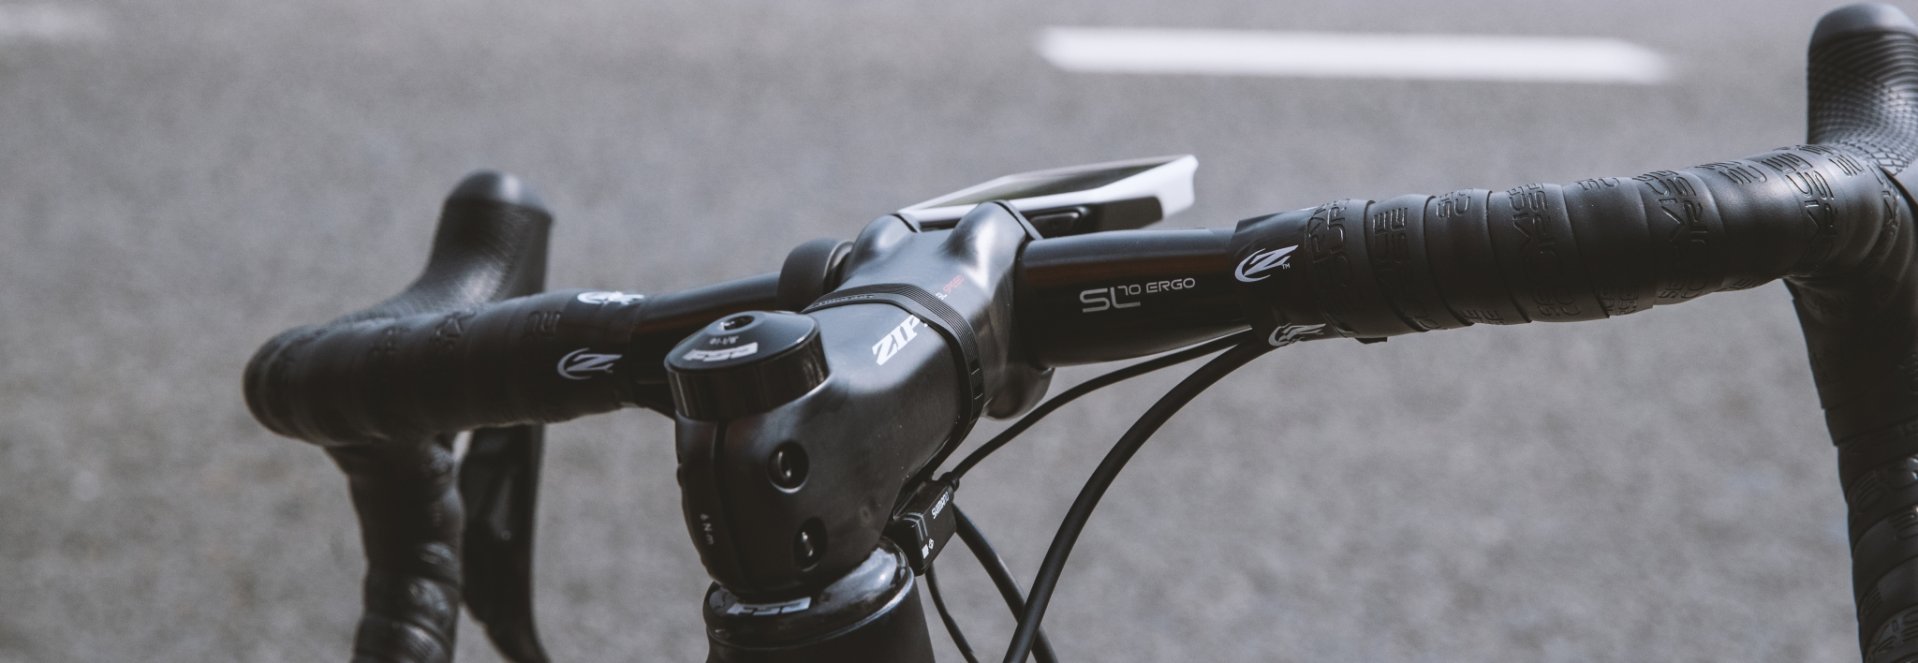 Zipp service course sl bike-components lenker vorbau sattelstütze carbon